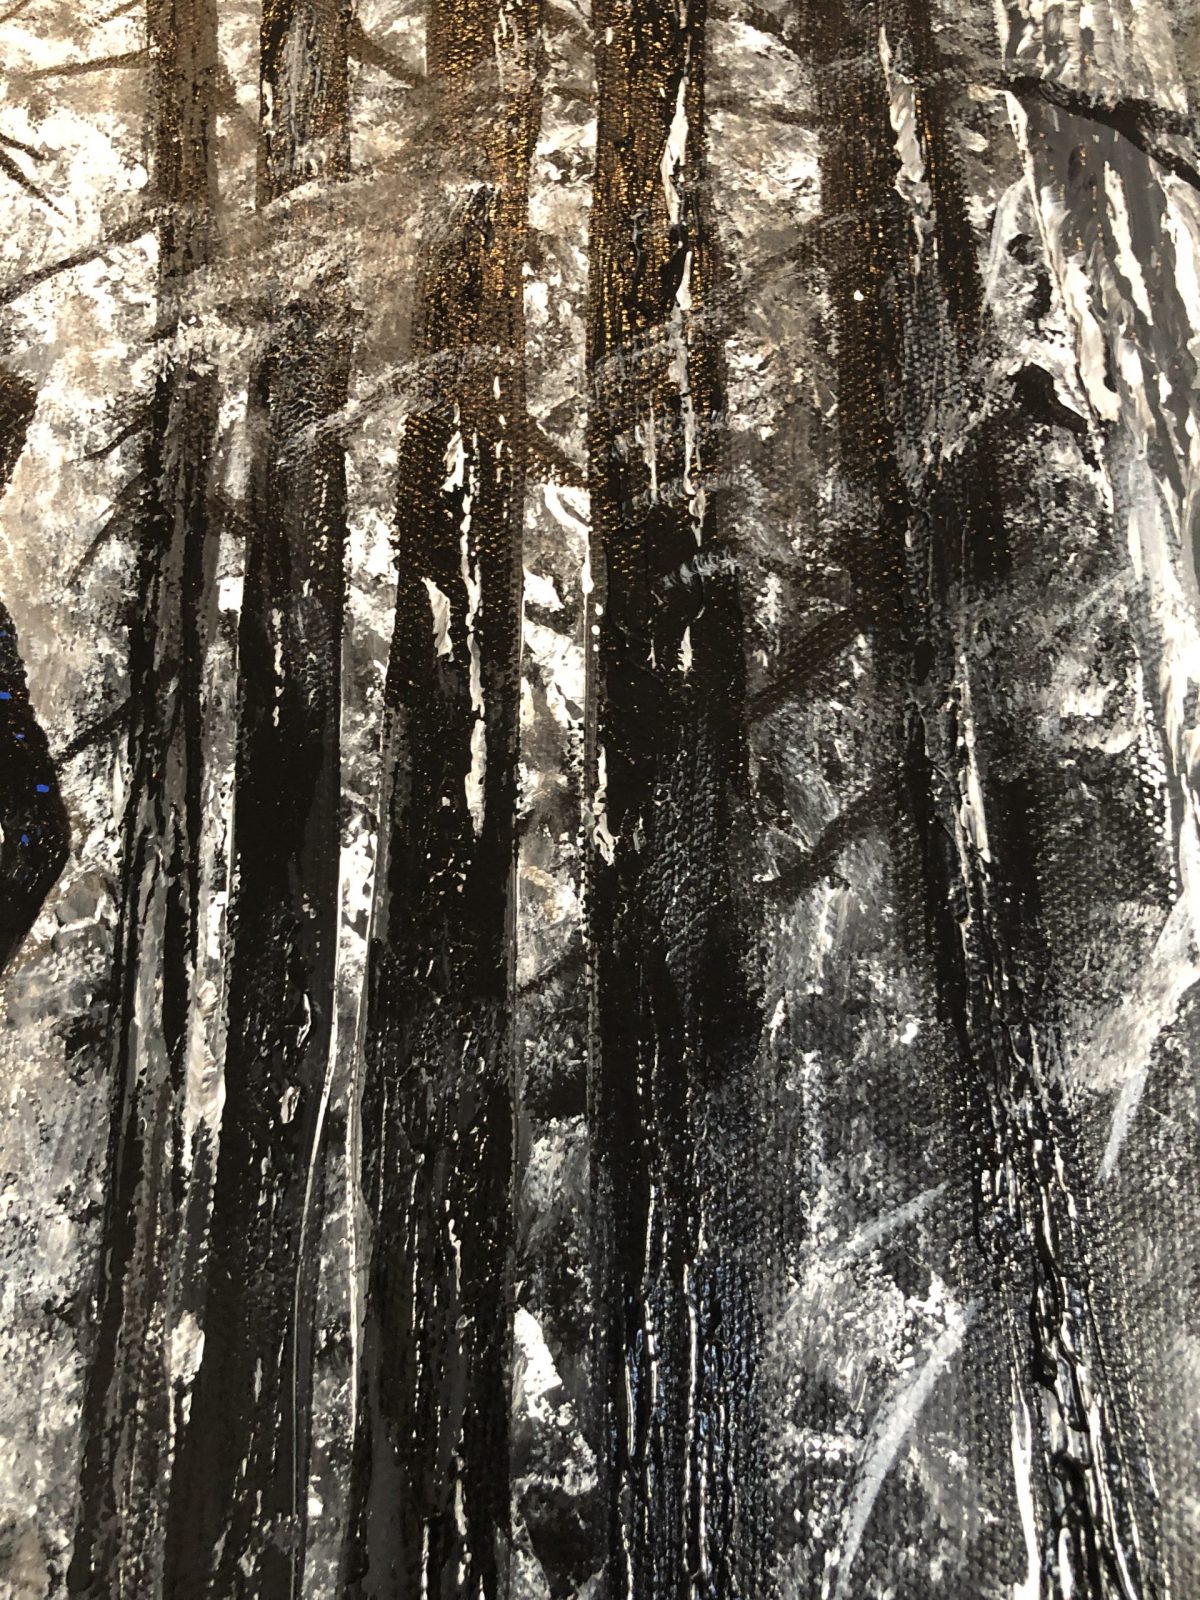 La veuve noire - le plan sur le côté de la toile, forêt - La veuve noire - peinture acrylique réalisé au couteau présentant une veuve noire entrant dans une forêt en noir et blanc